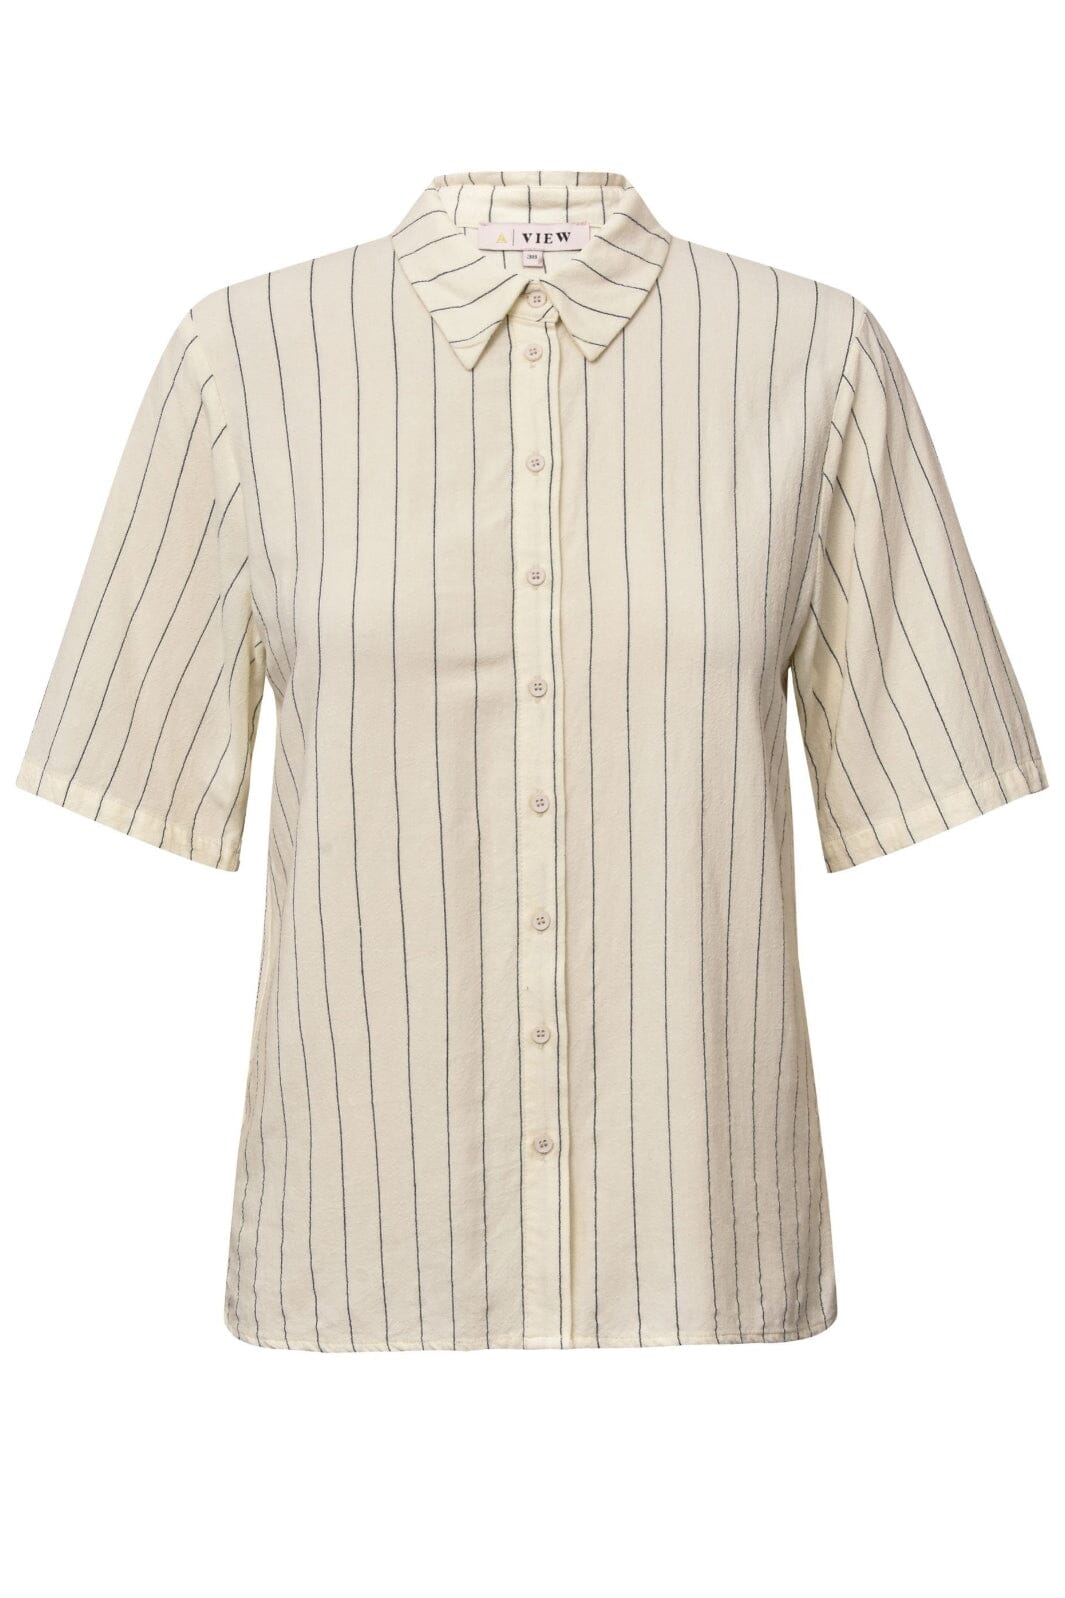 A-View - Lerke Stripe Shirt - 005 Off White Skjorter 